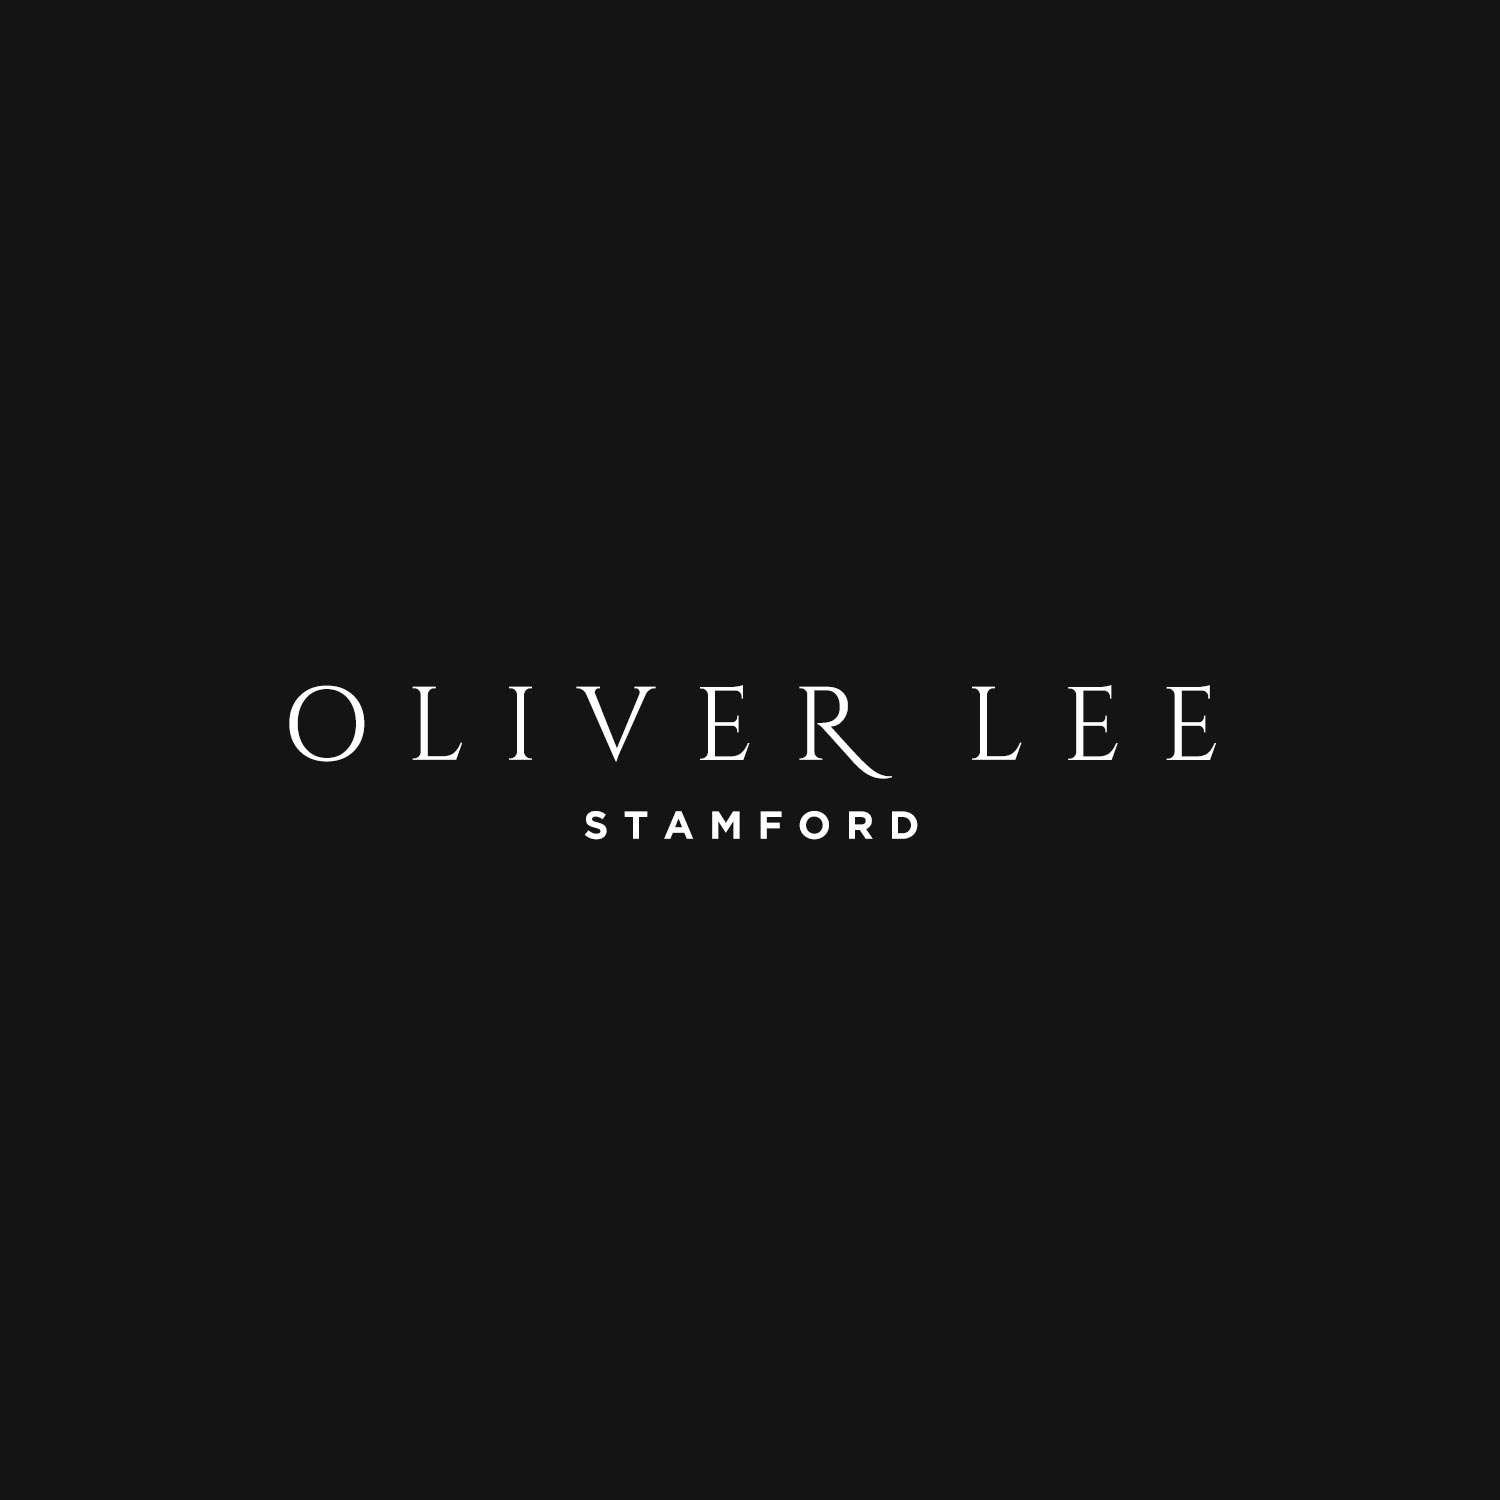 Oliver Lee